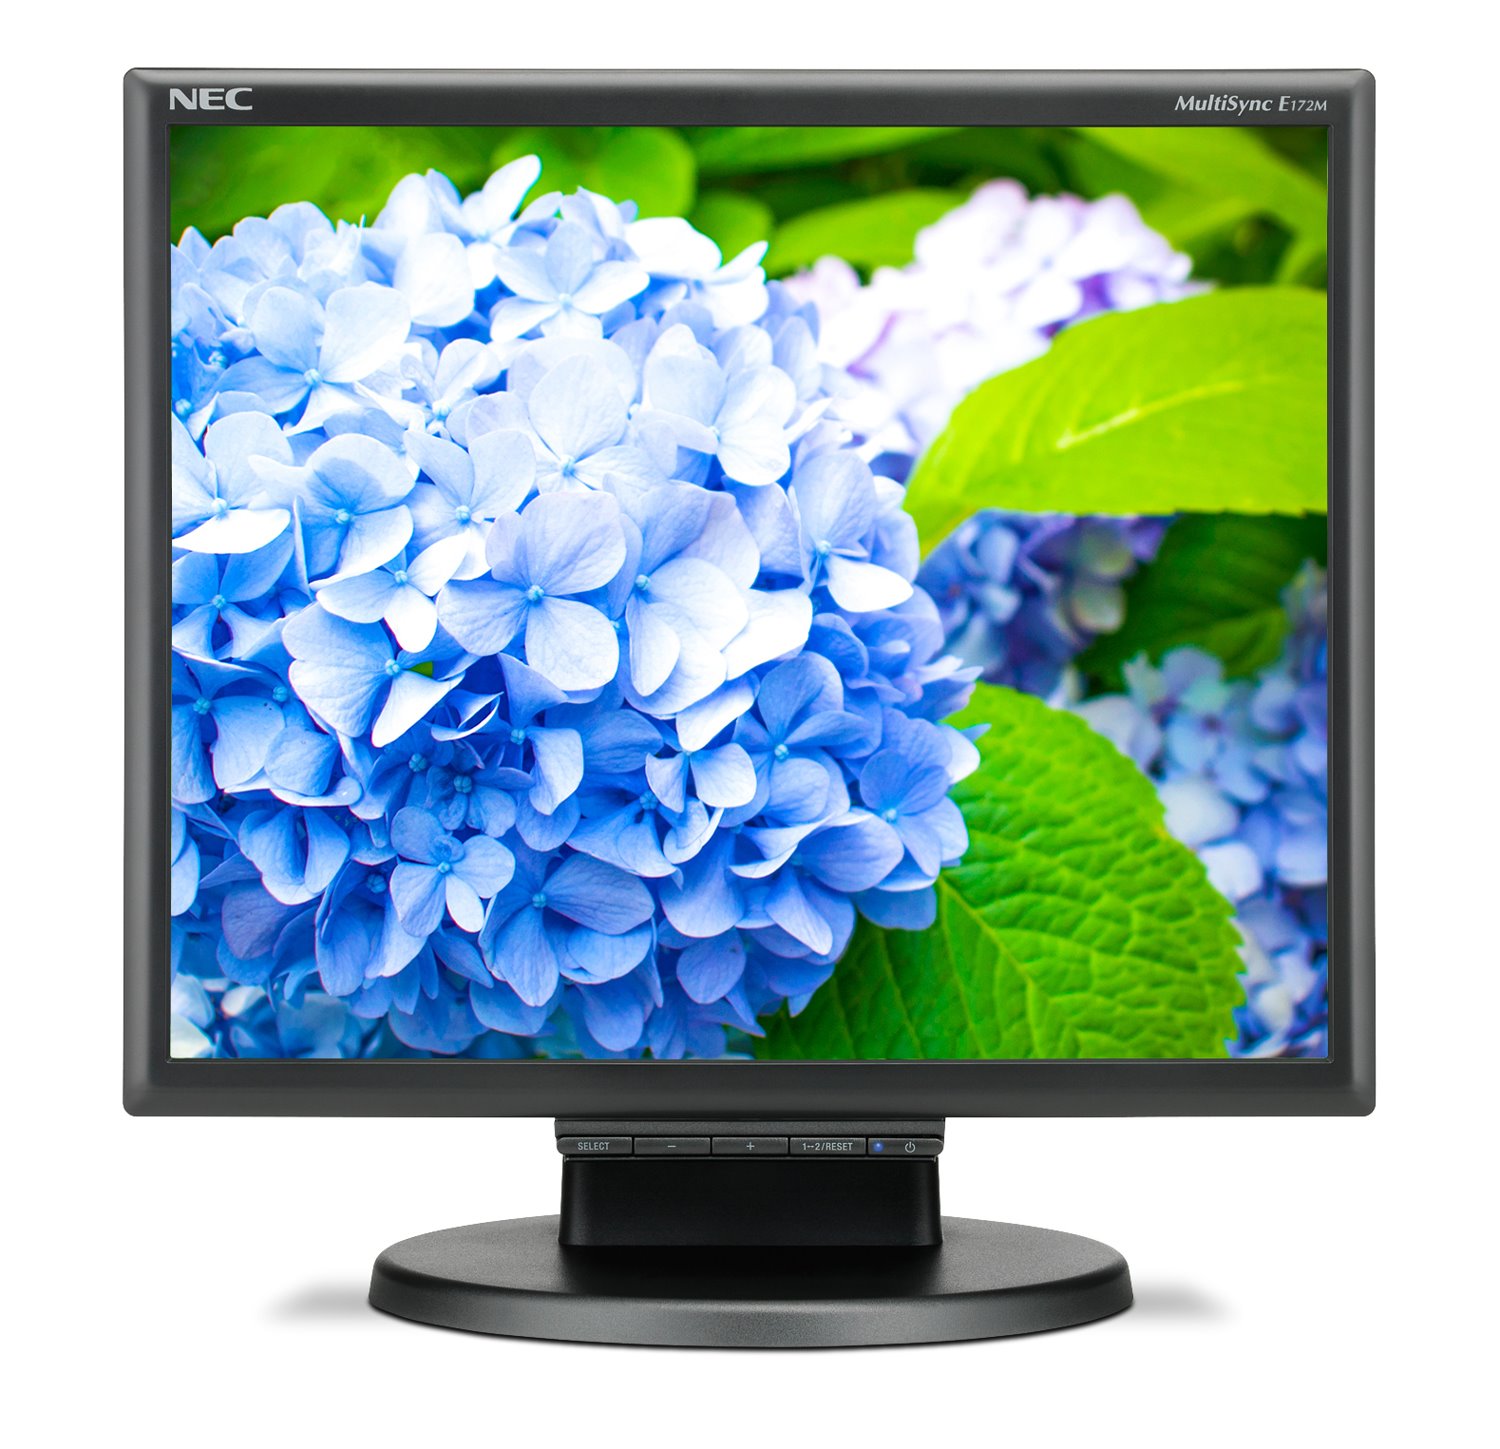 NEC Display E172M-BK 17" SXGA LED LCD Monitor - 5:4 - Black